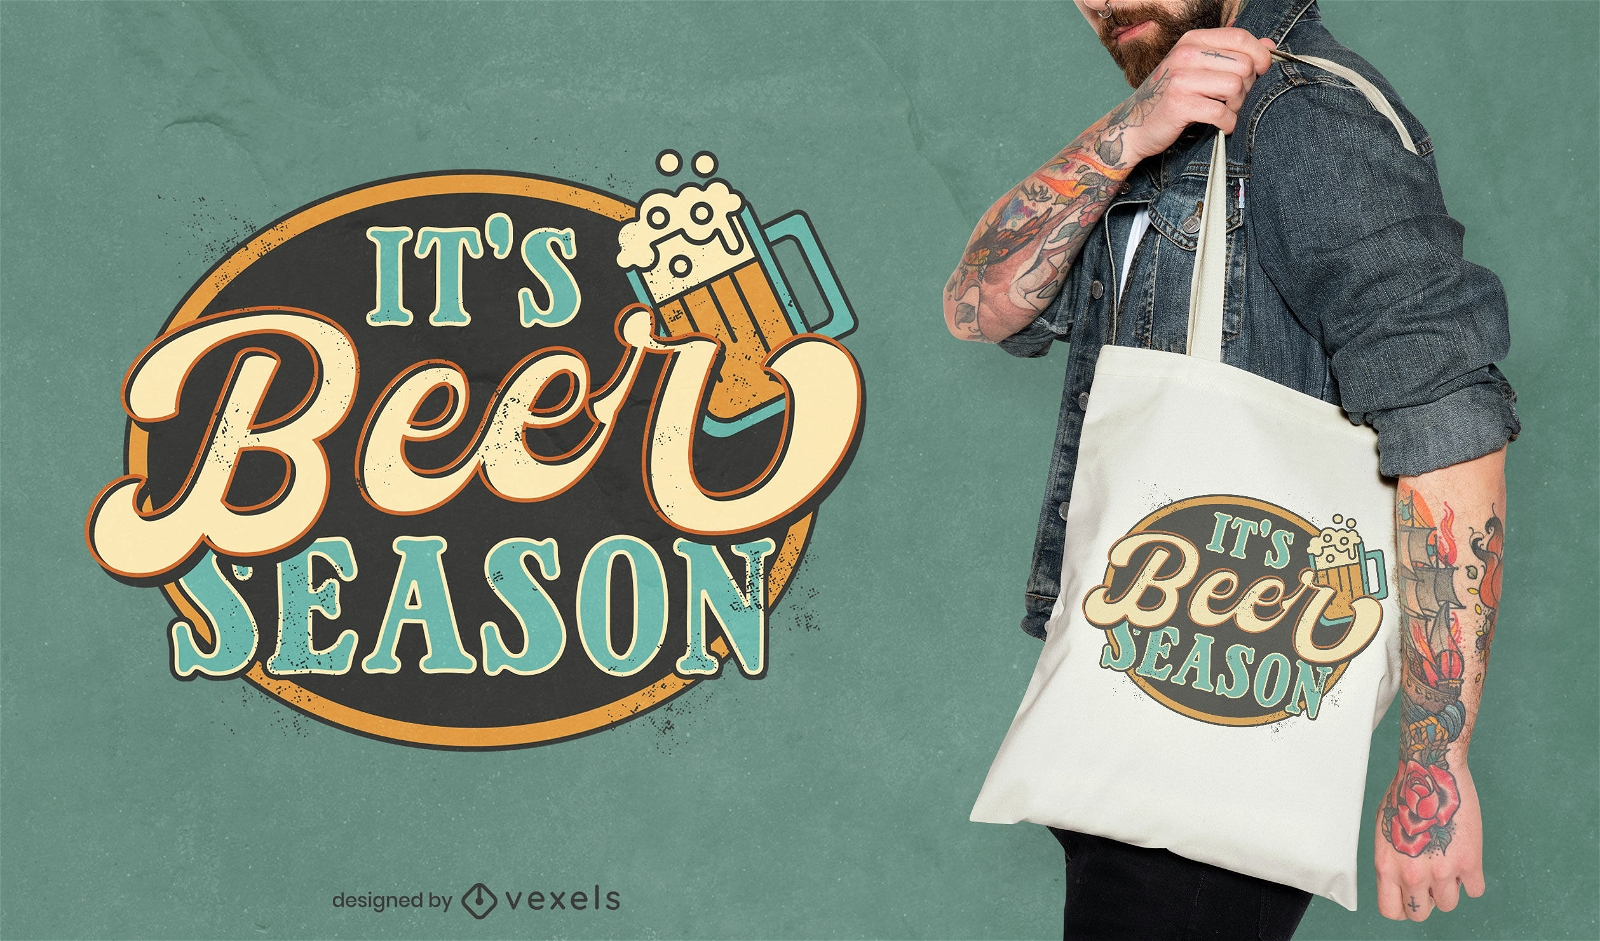 Beer season vintage tote bag design